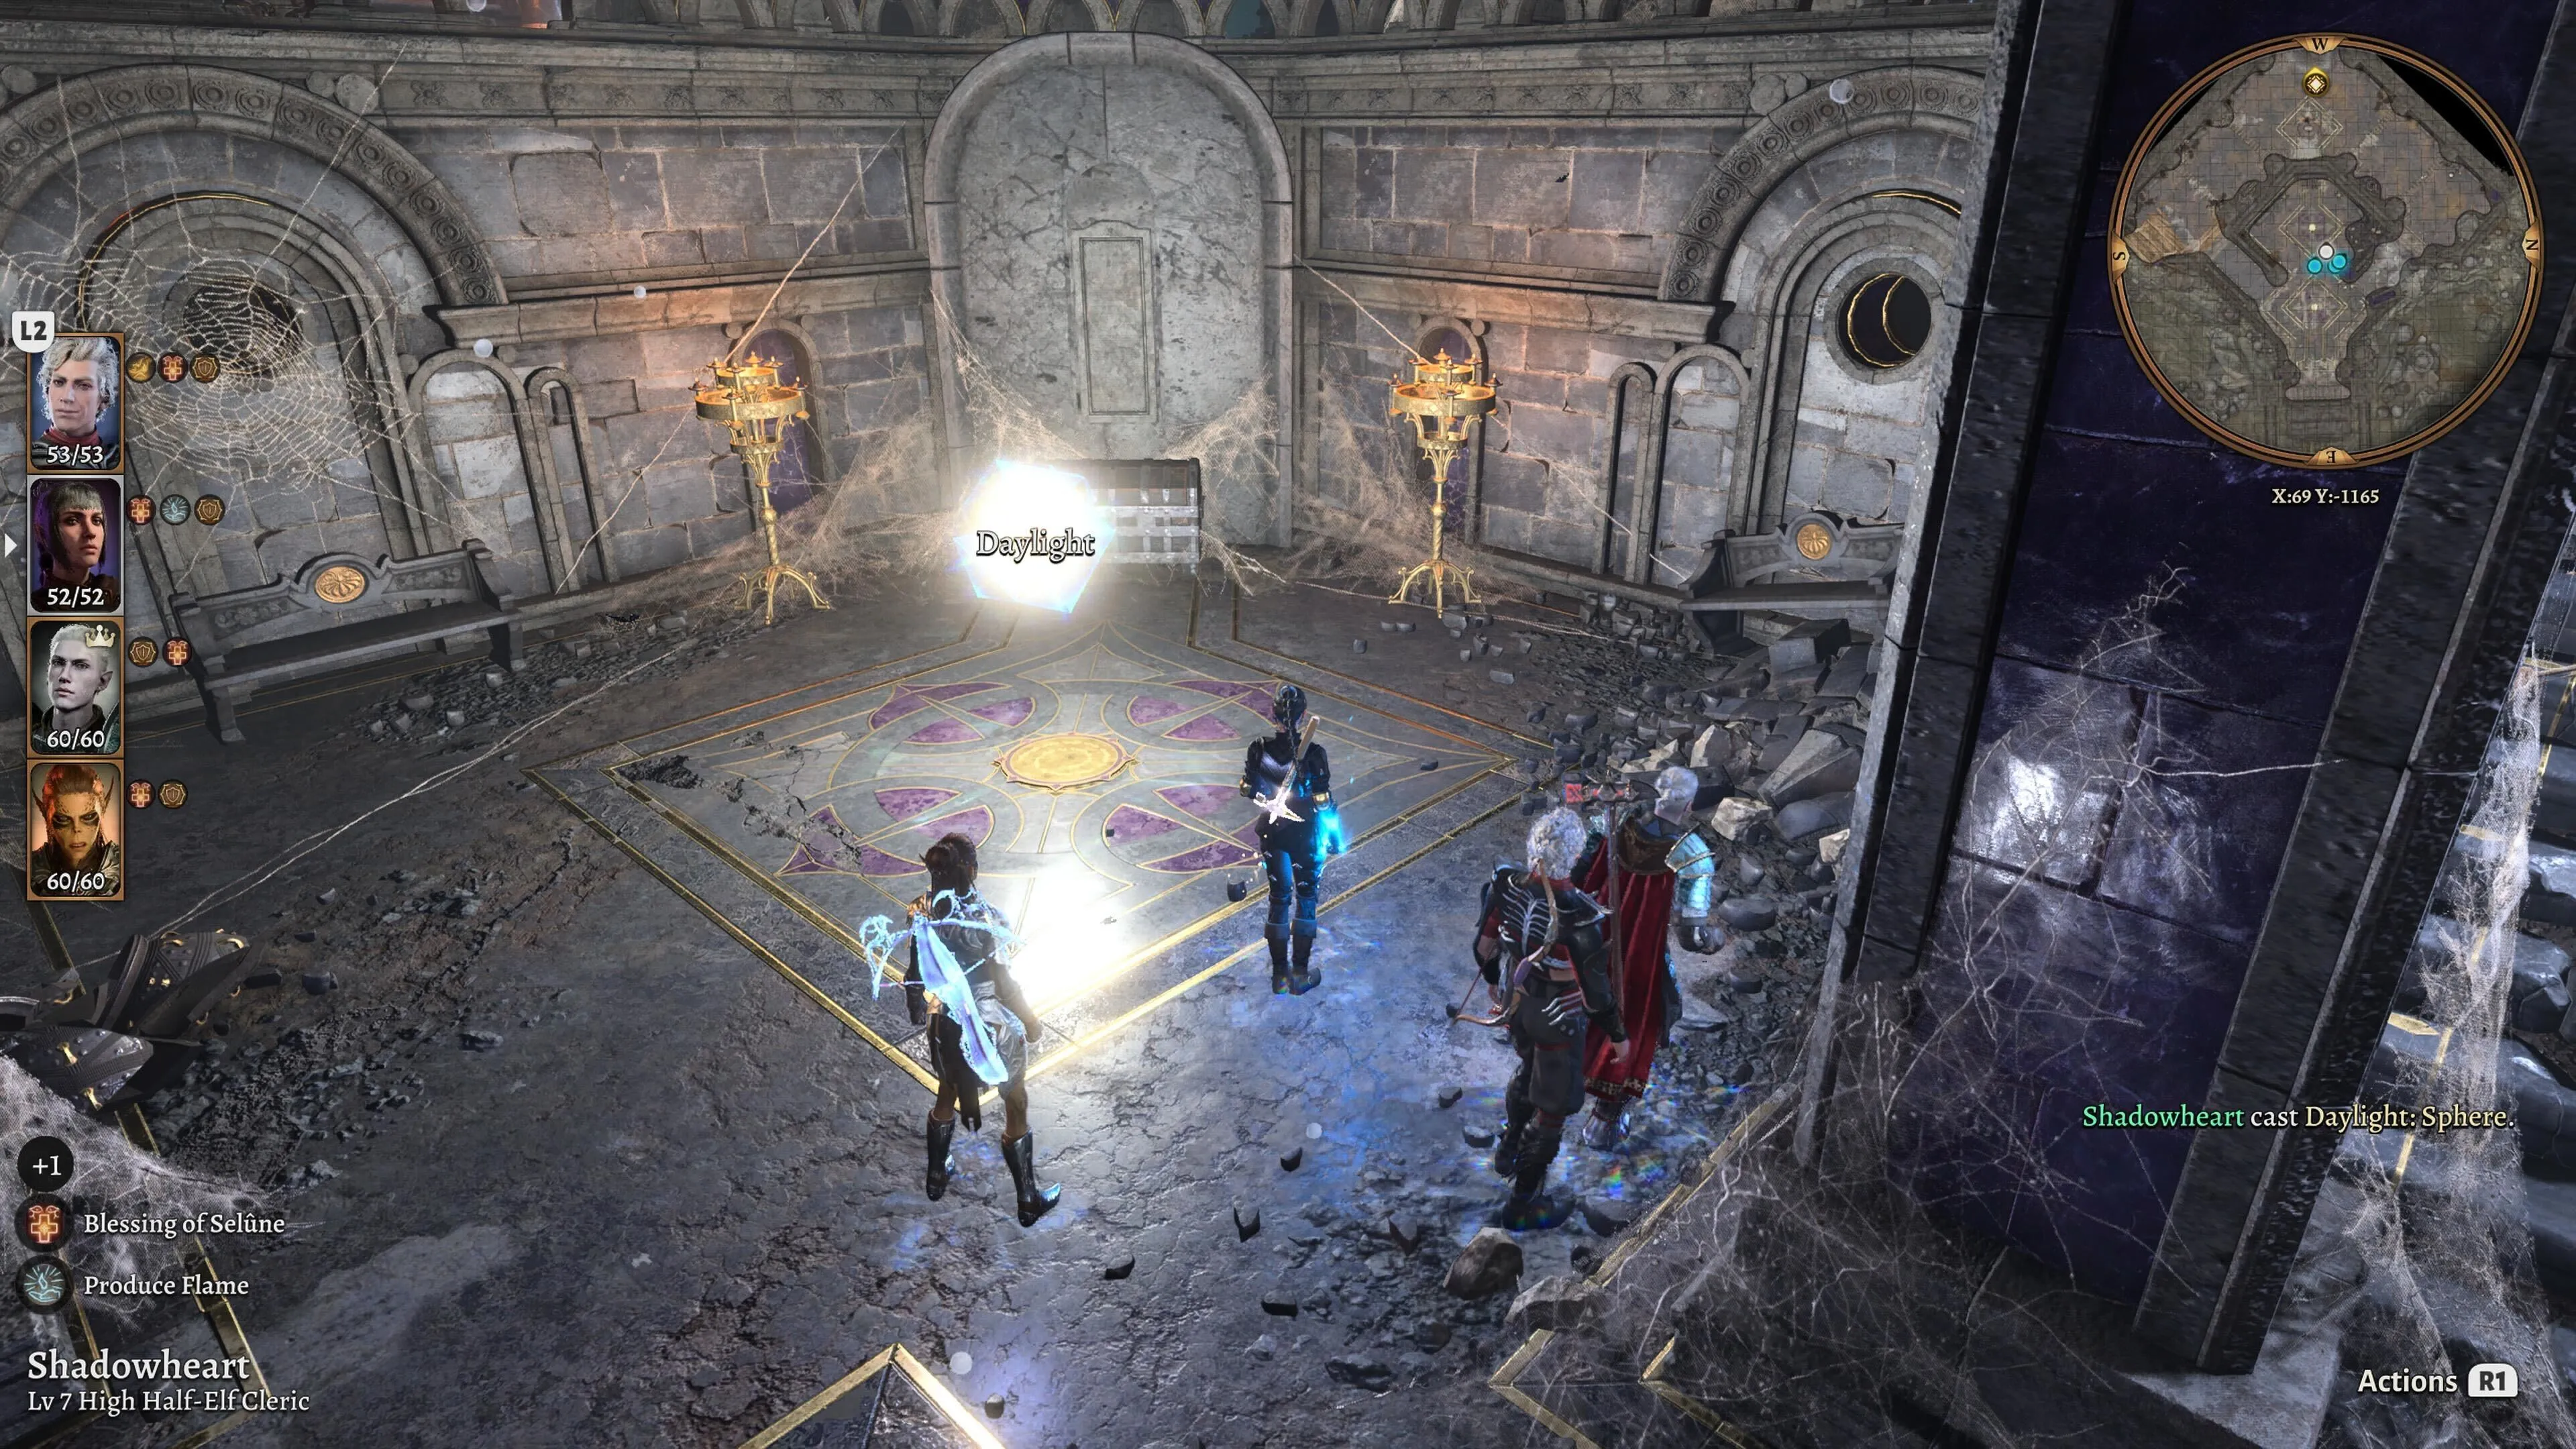 La fête de Baldur's Gate 3 se tient dans une ruine avec une sphère de lumière du jour